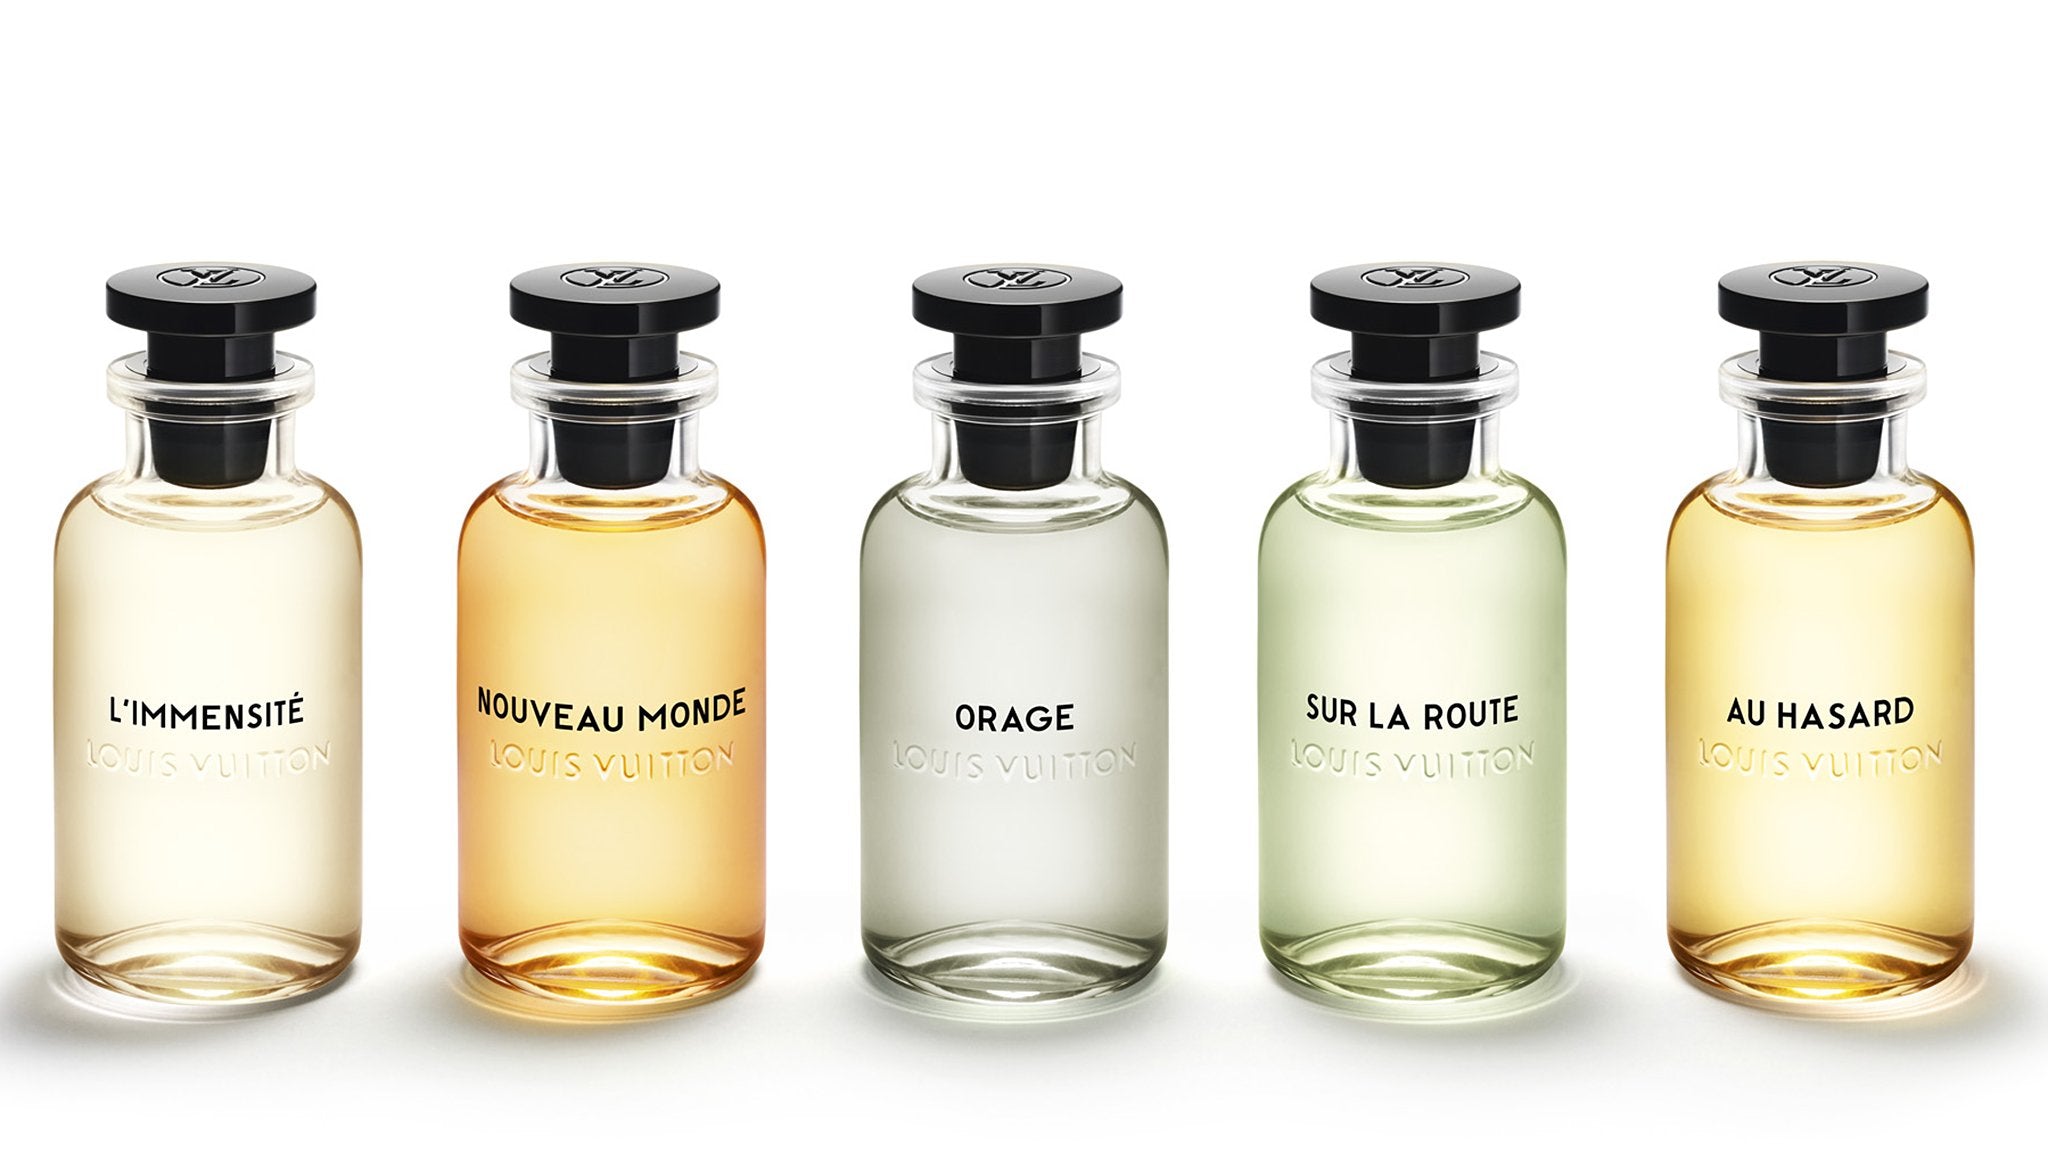 Louis Vuitton L'Immensite Eau De Parfum 3.4 oz/100 ml Spray.